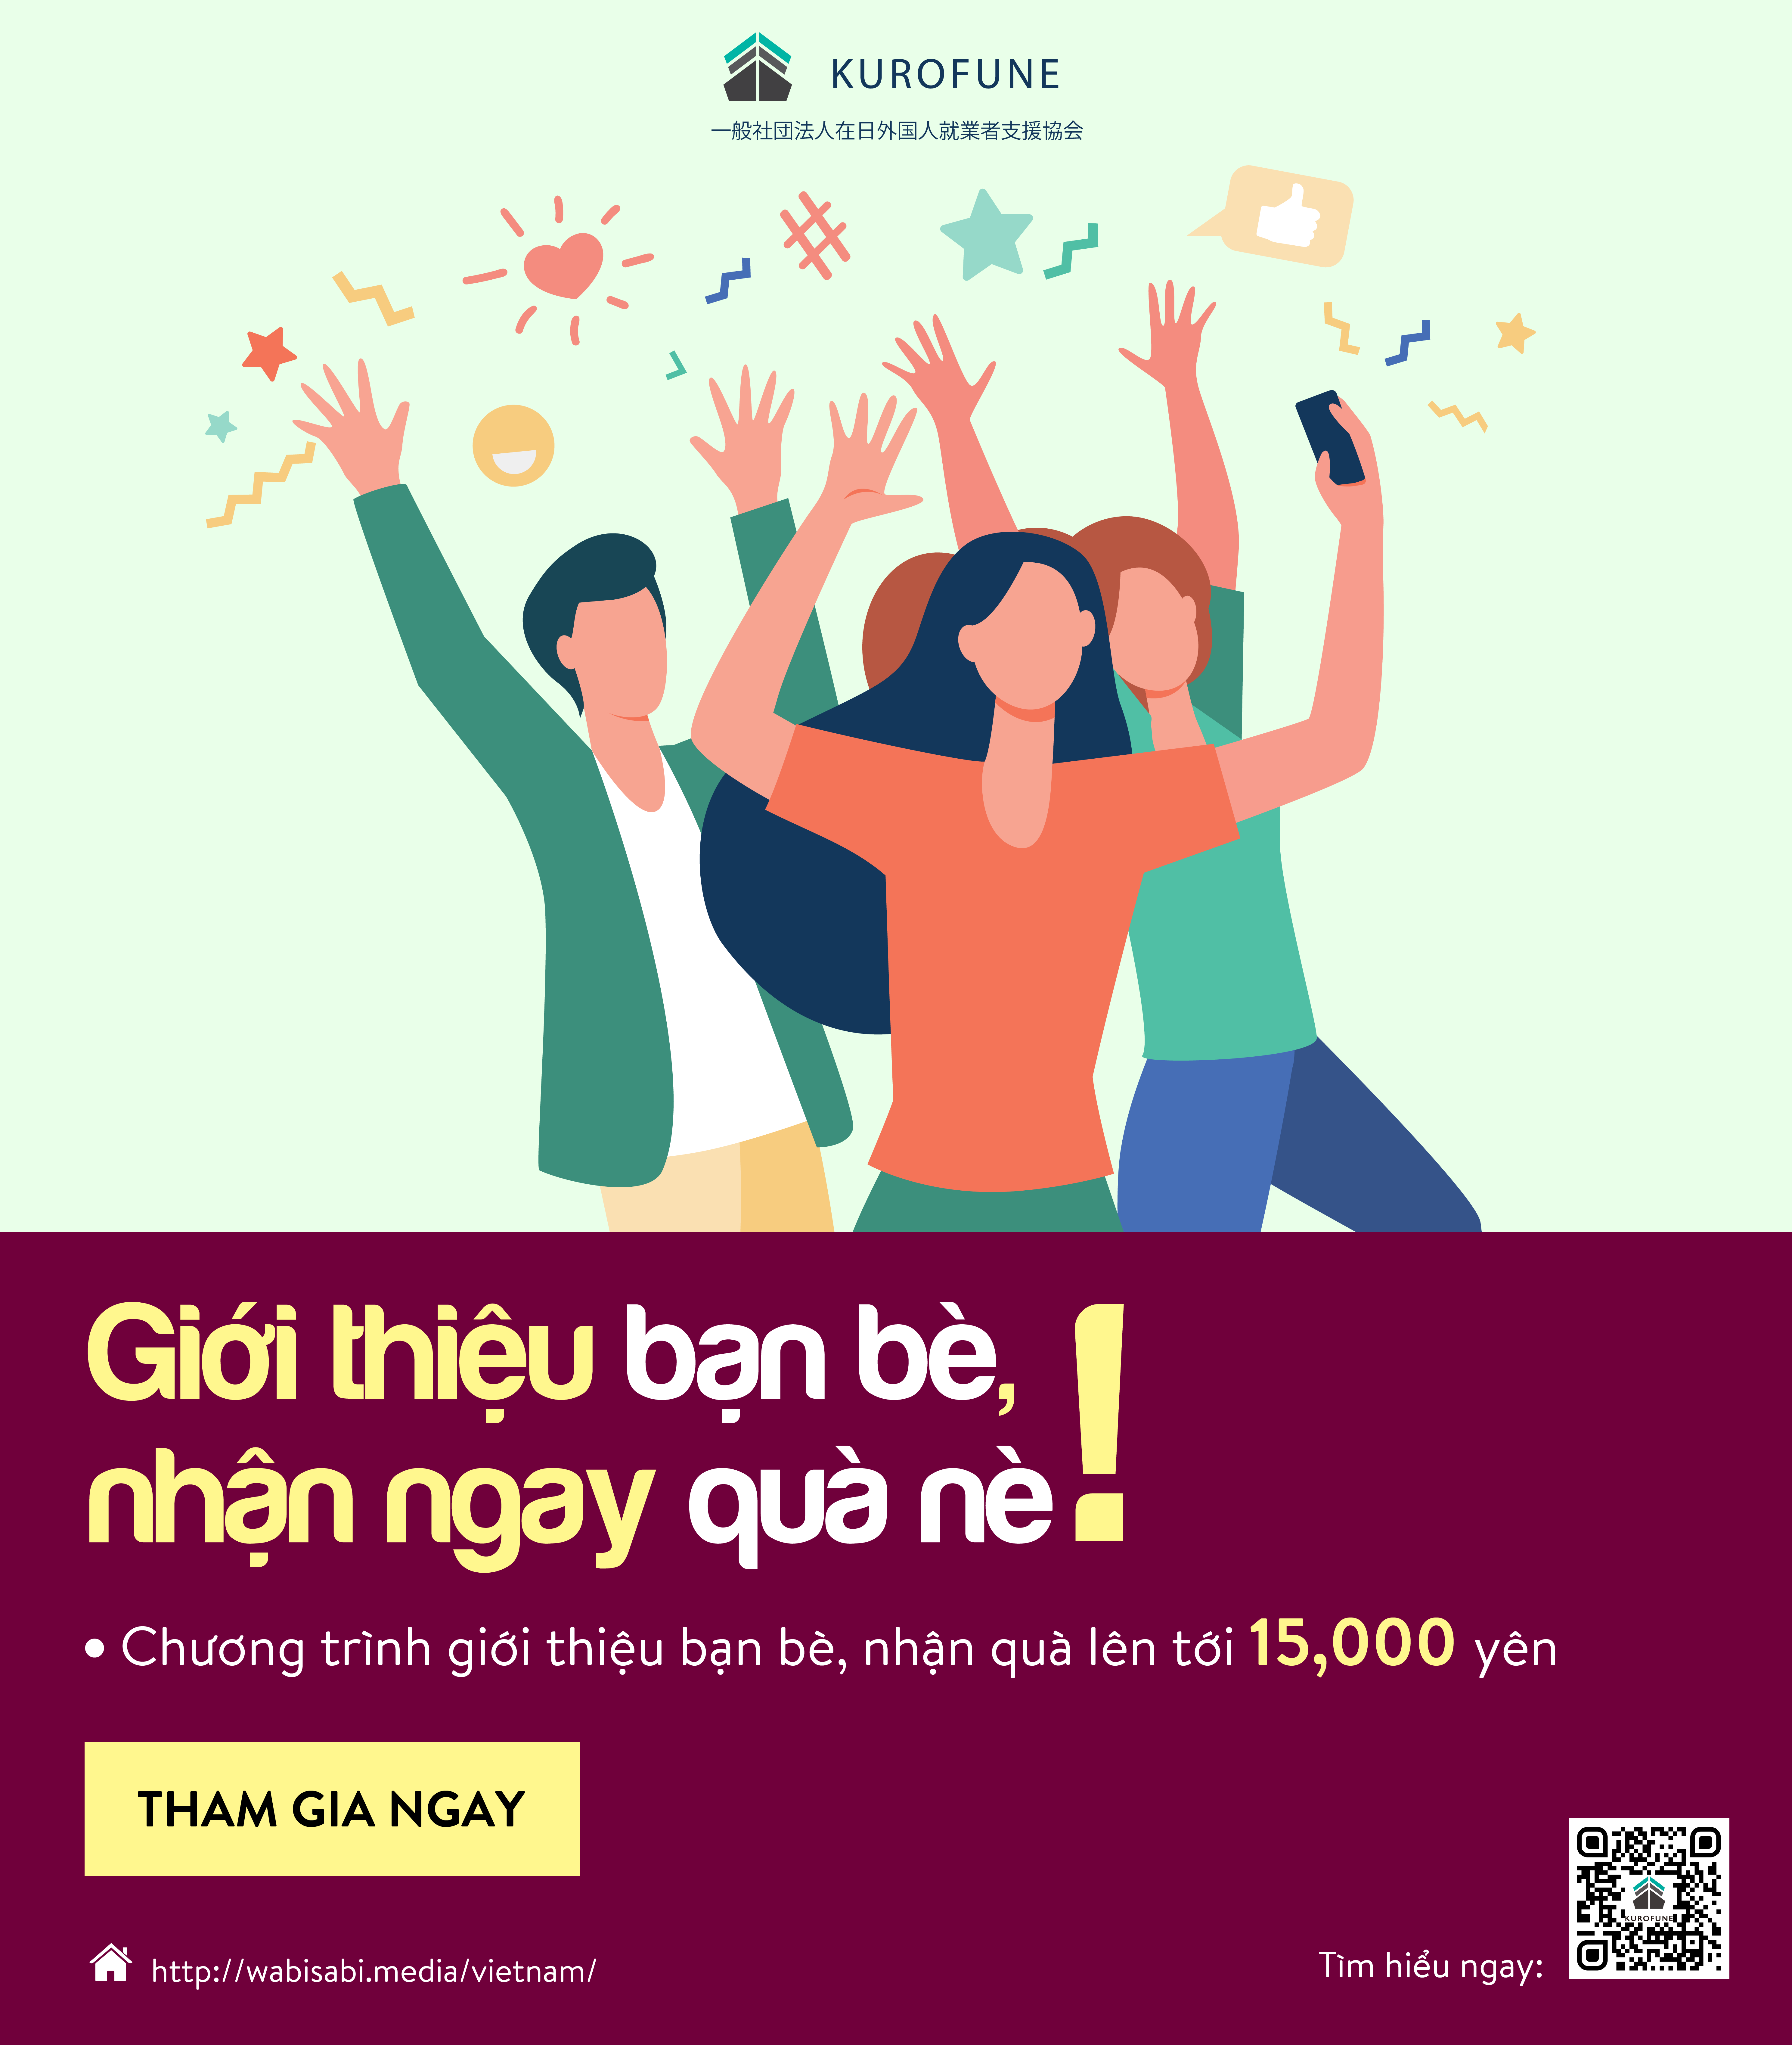 BÂY GIỜ HOẶC KHÔNG BAO GIỜ !! Cơ hội tham gia Hiệp hội hỗ trợ việc cho người Việt Nam tại Nhật Bản VỚI 0 ĐỒNG